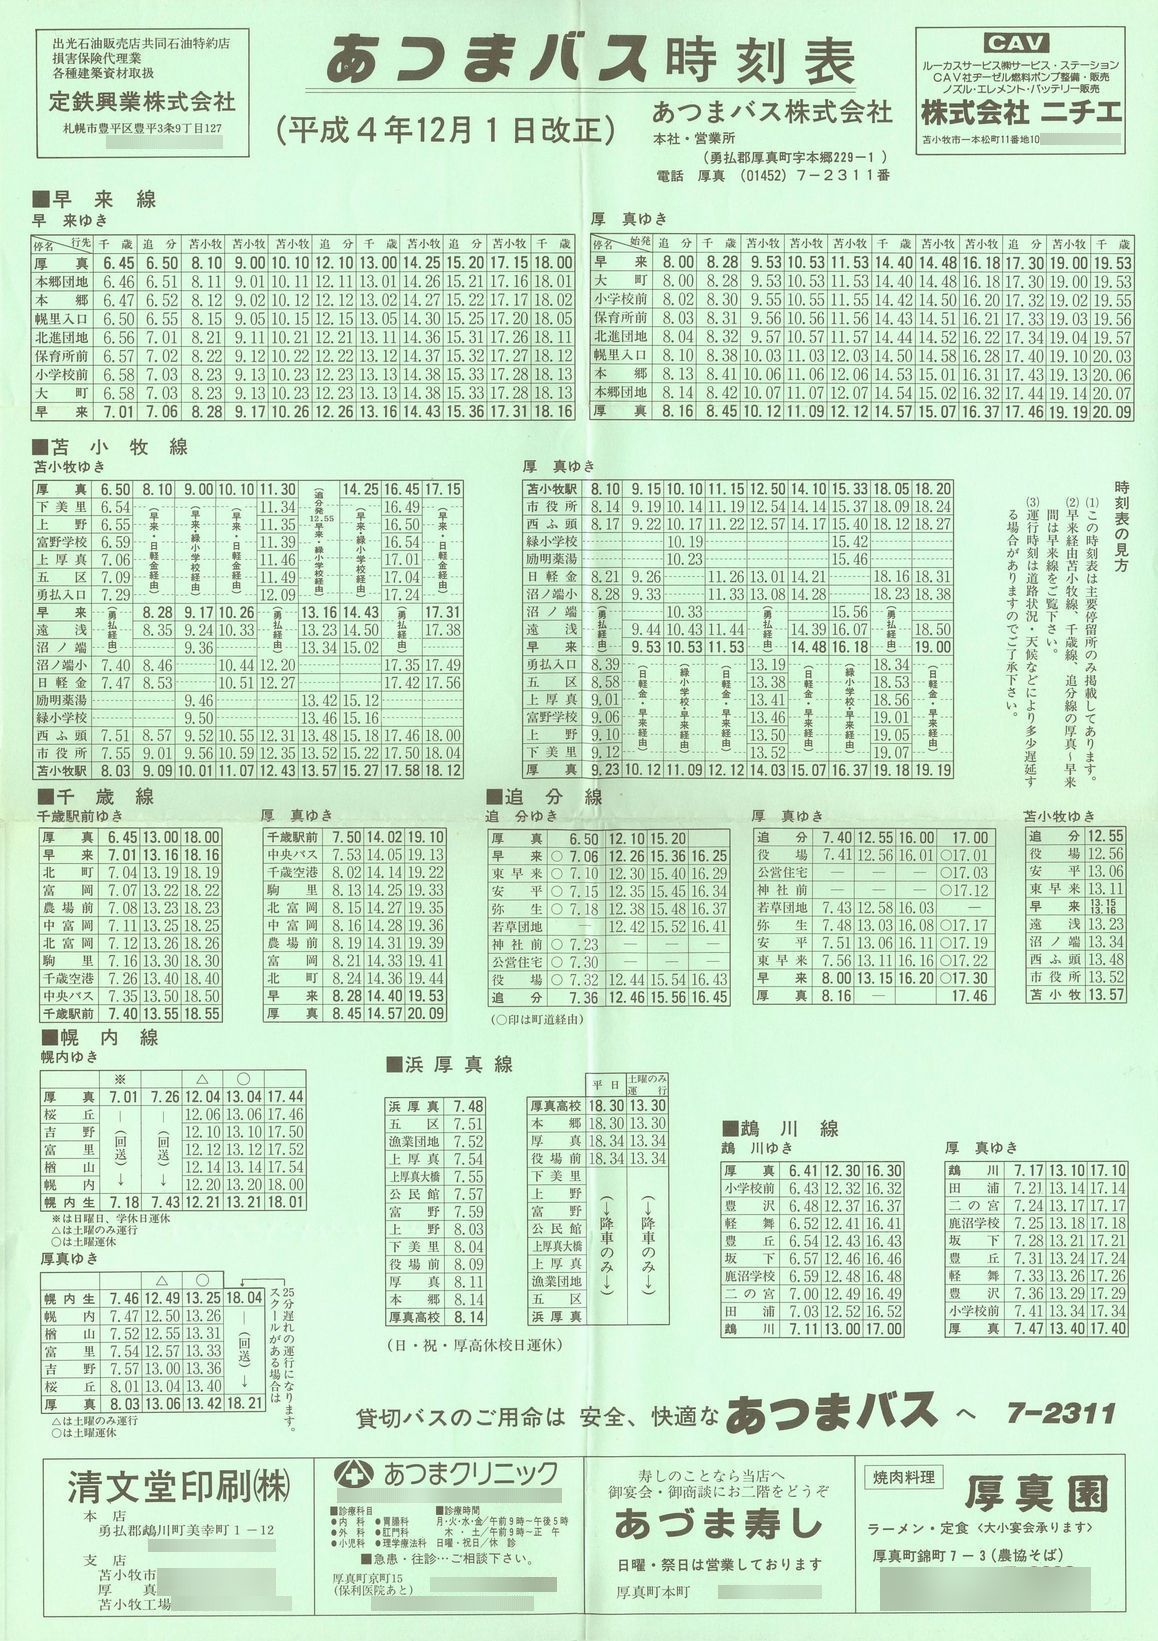 1992-12-01改正_あつまバス_時刻表